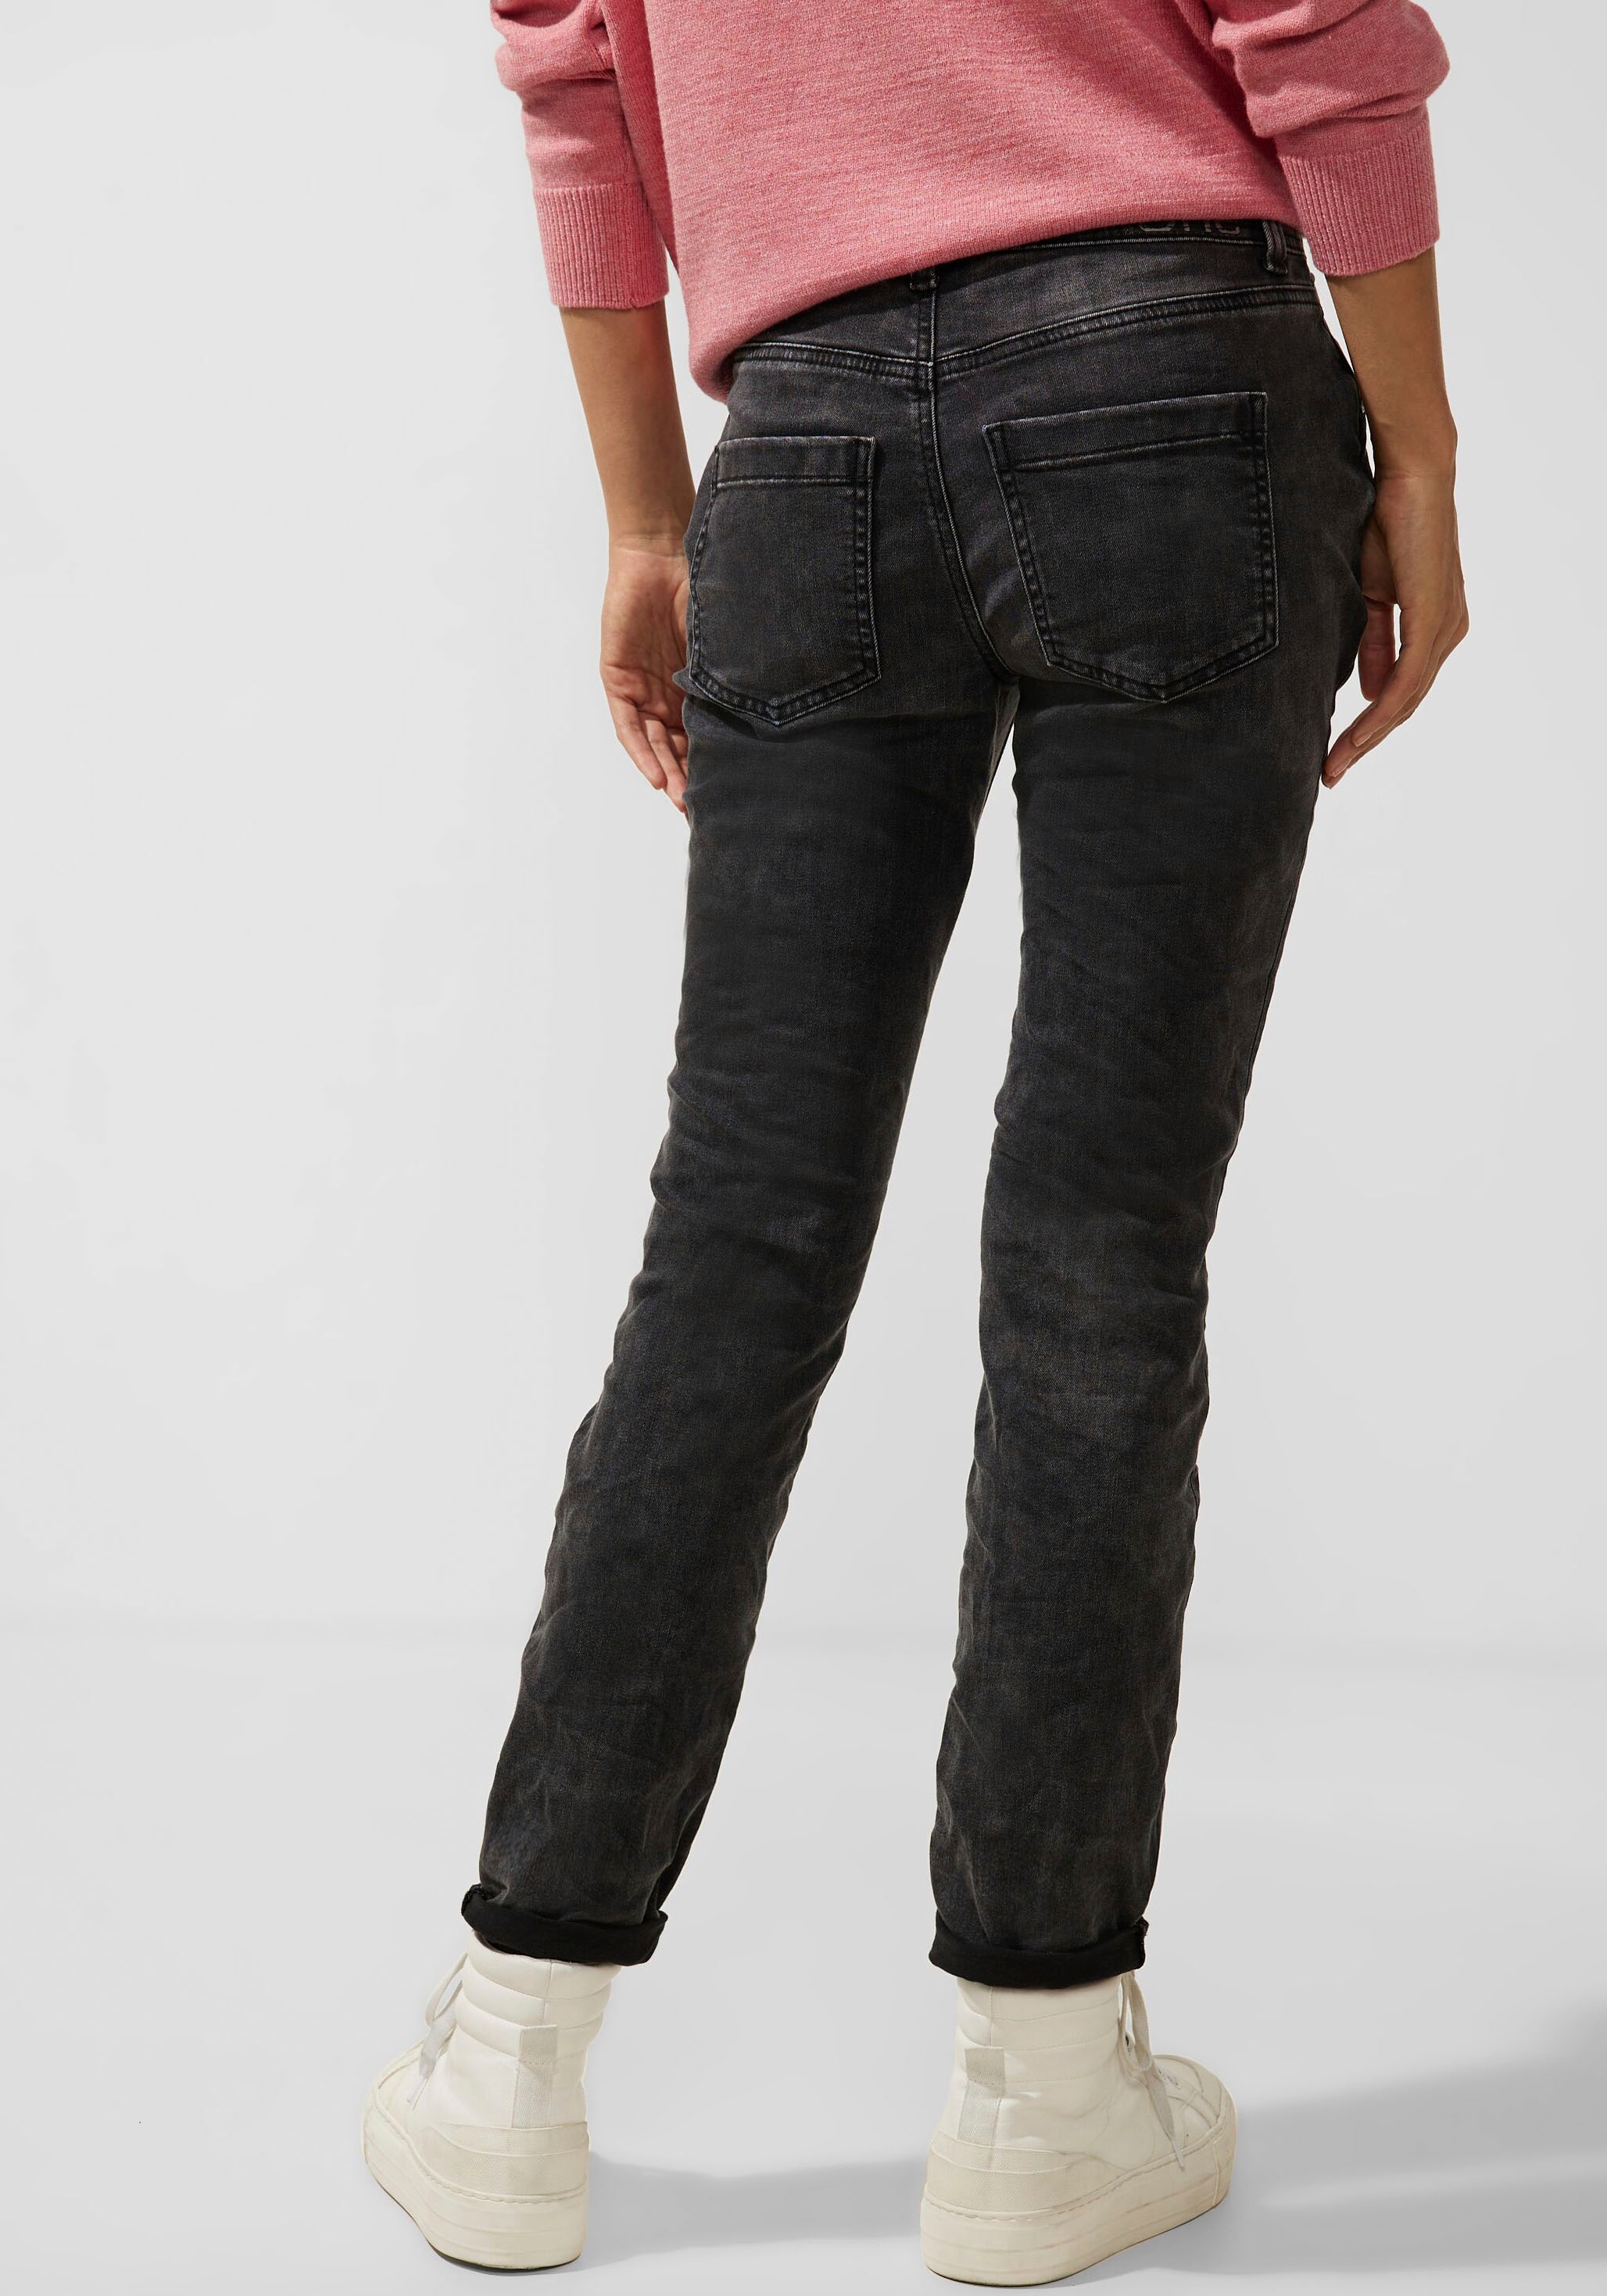 Passe ONE und STREET formgebender hinten High-waist-Jeans, mit shoppen vorne